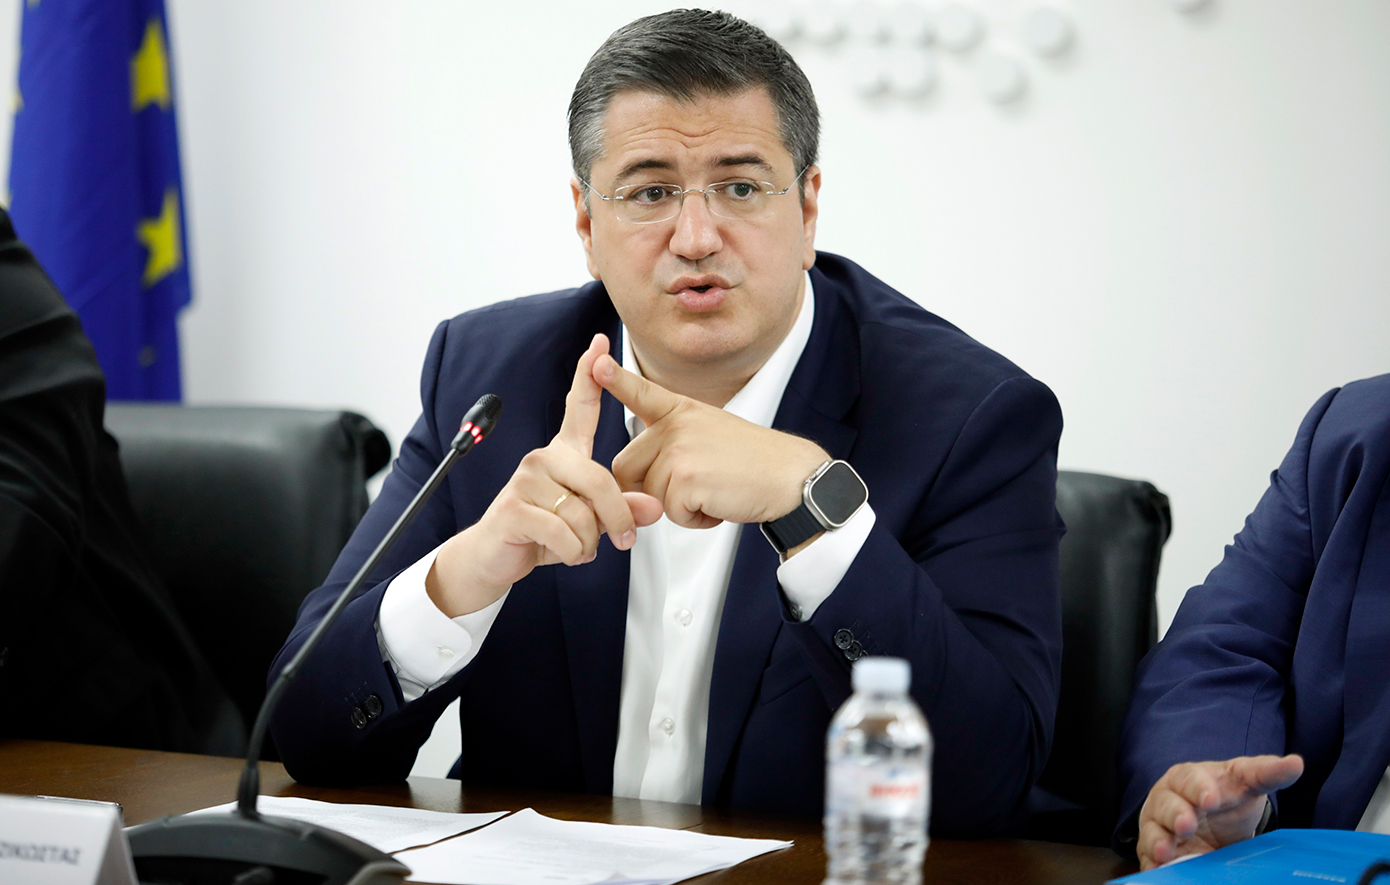 Τον Απόστολο Τζιτζικώστα προτείνει η Ελλάδα για επίτροπο στην Κομισιόν